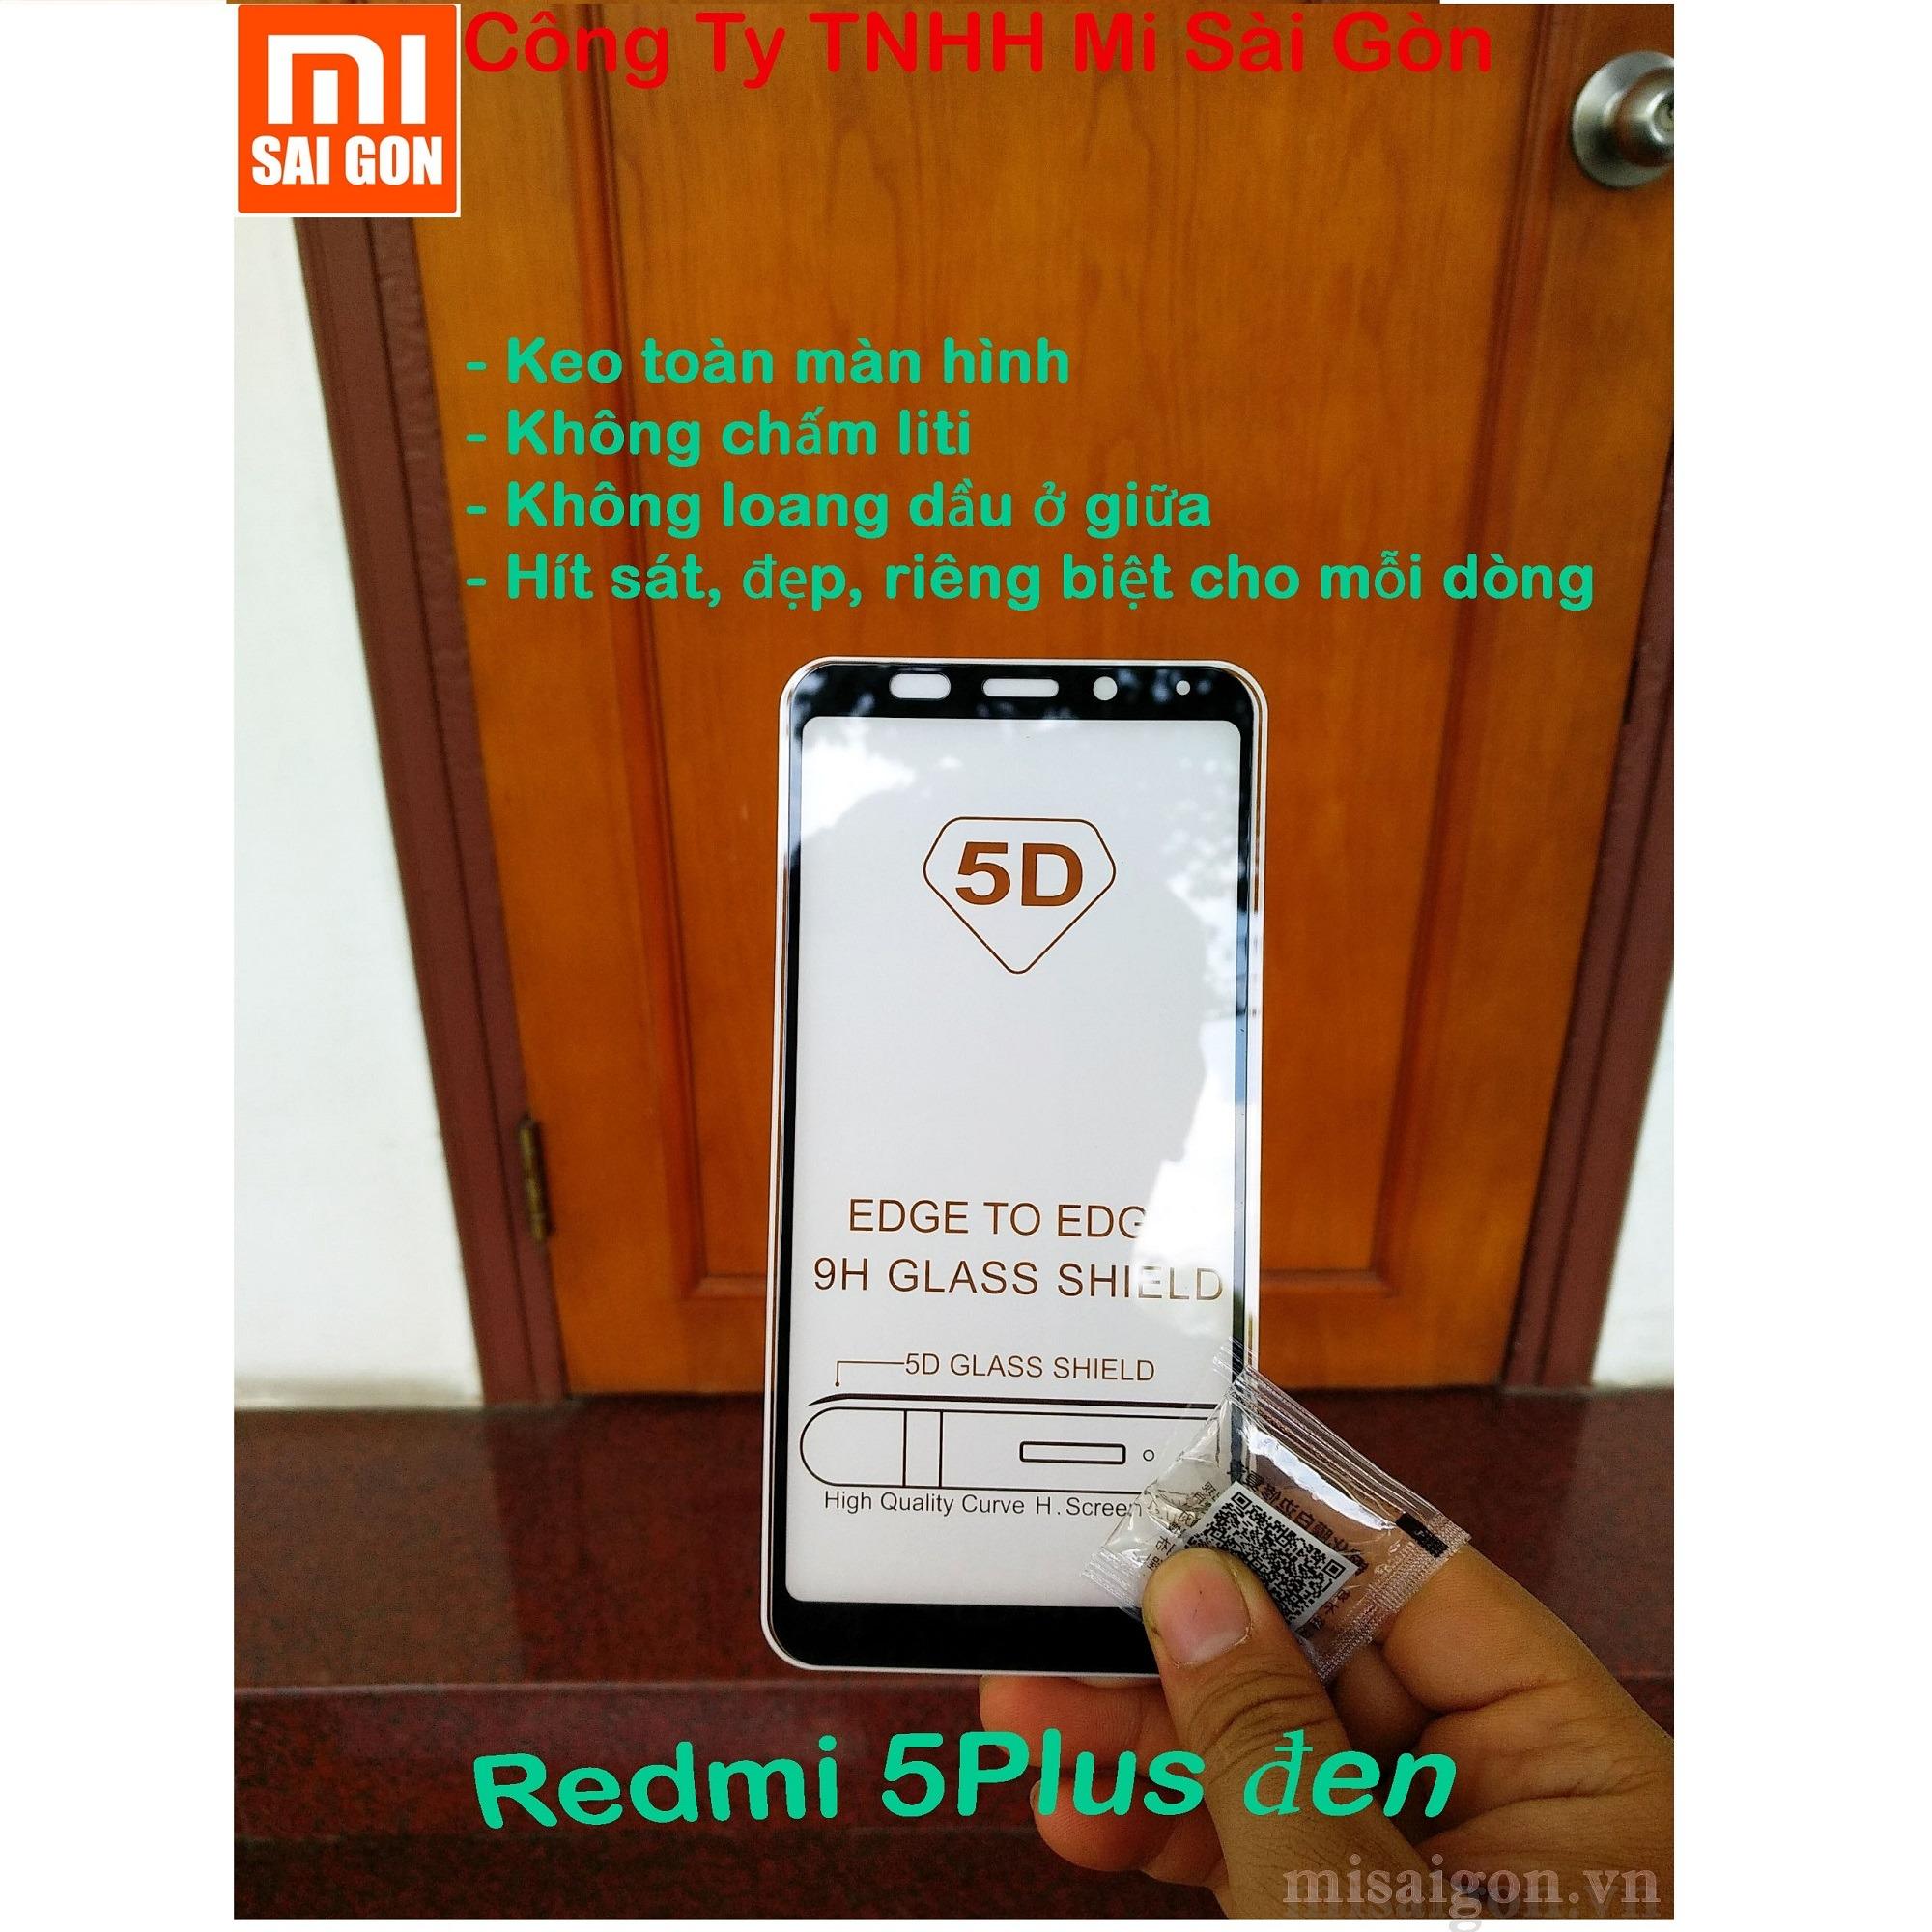 1 miếng cường lực Xiaomi Redmi 5 Plus ( ĐEN) full màn 5D keo toàn màn hình, không chấm liti,...